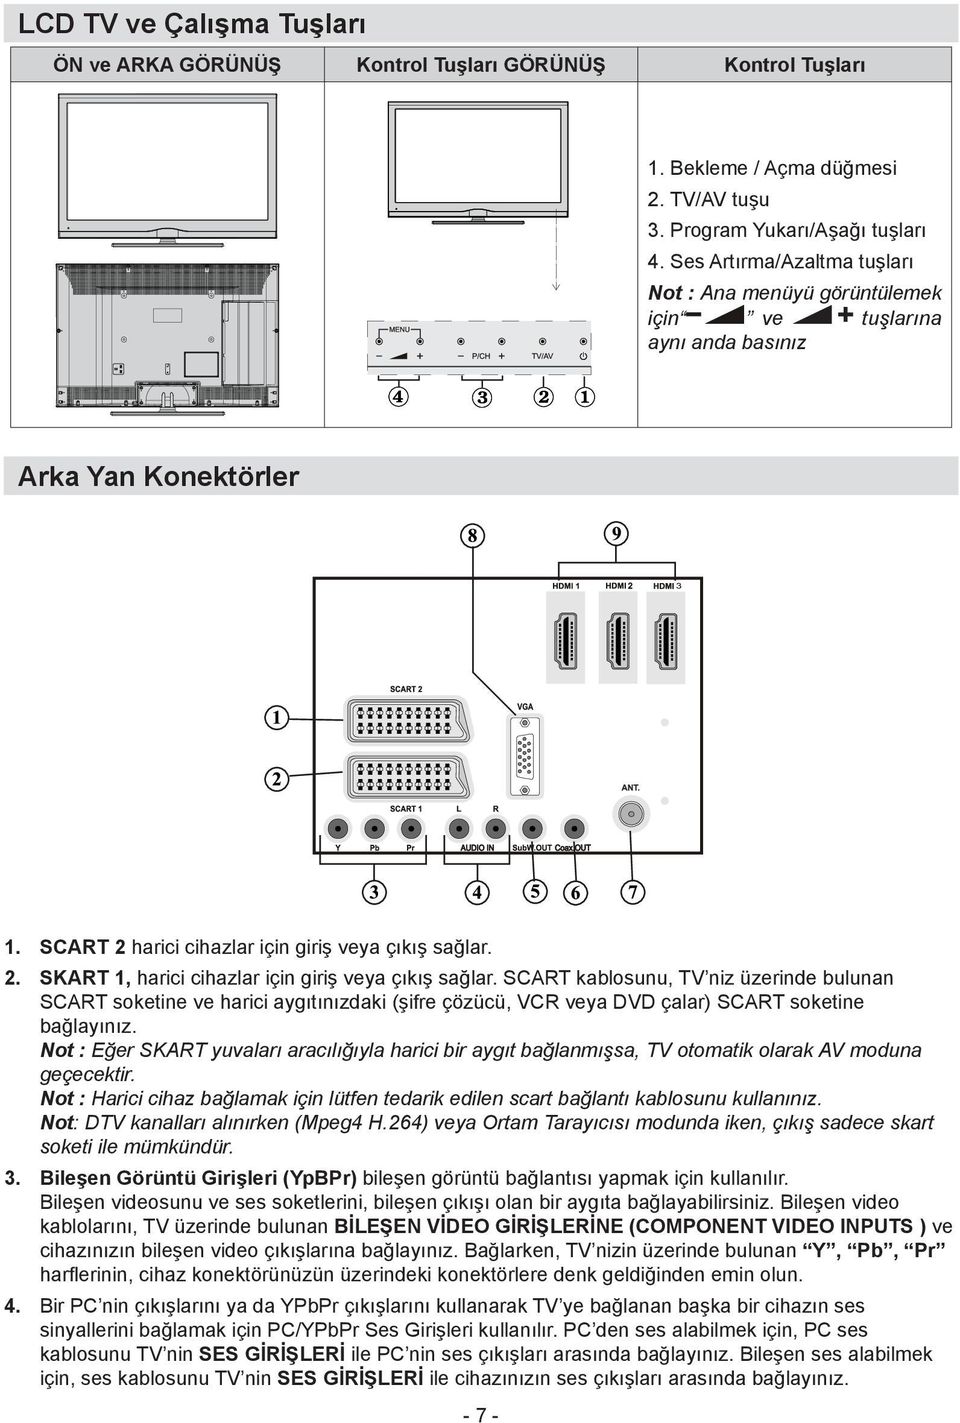 SCART kablosunu, TV niz üzerinde bulunan SCART soketine ve harici aygıtınızdaki (şifre çözücü, VCR veya DVD çalar) SCART soketine bağlayınız.